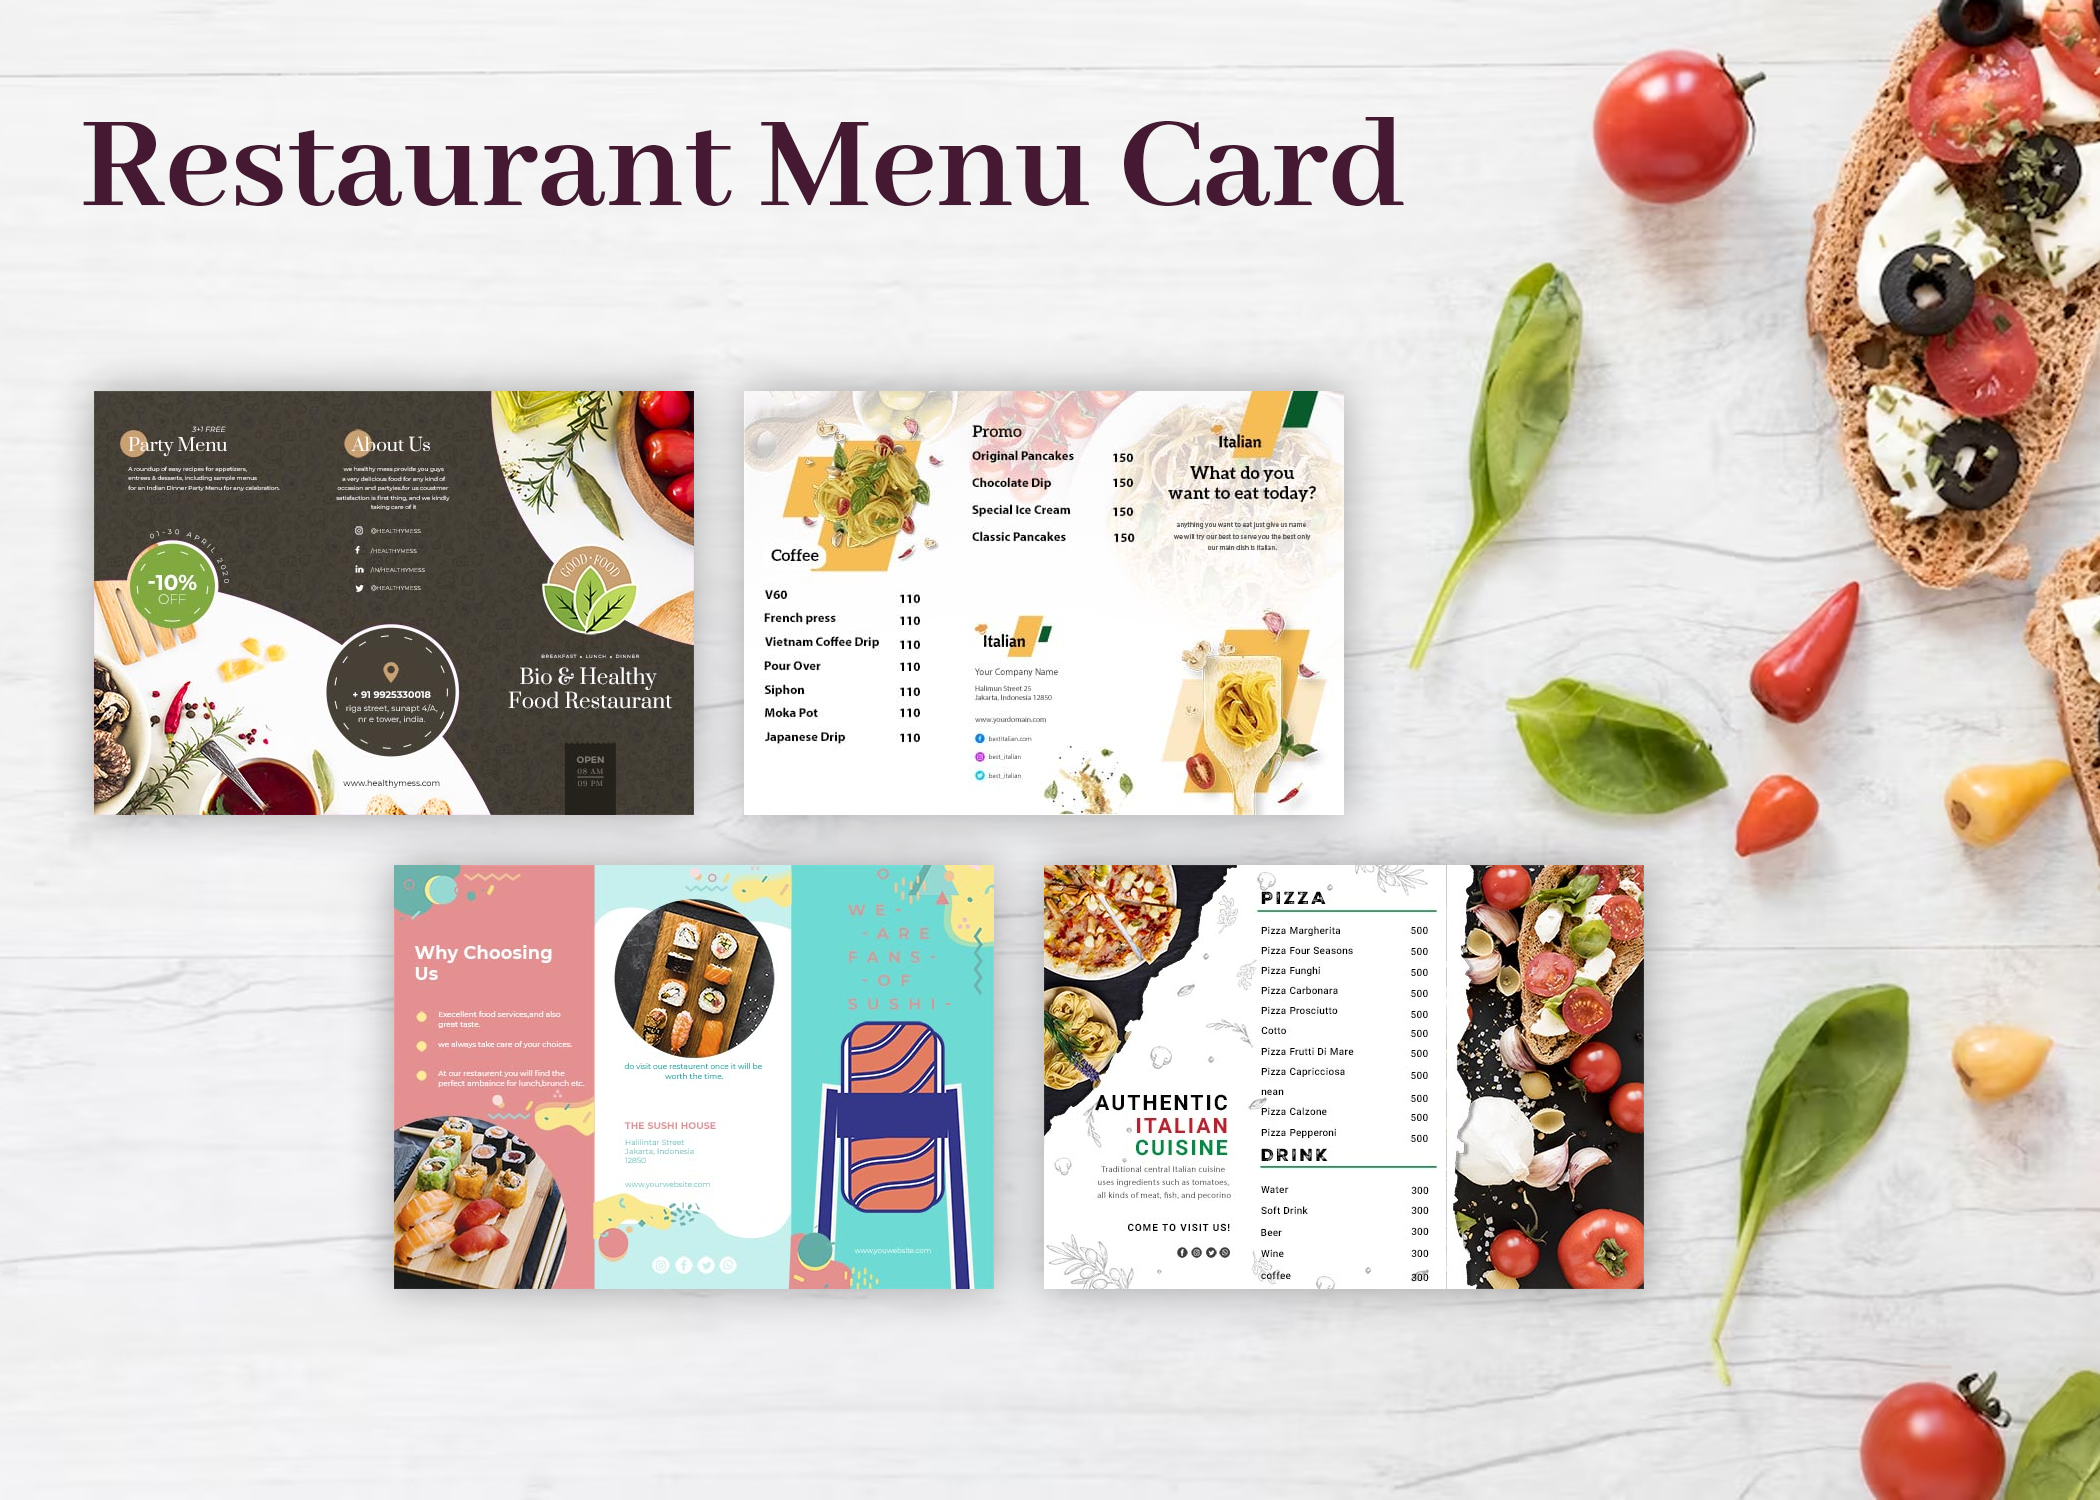 Restaurant Menu Card: A Symphony of Flavors